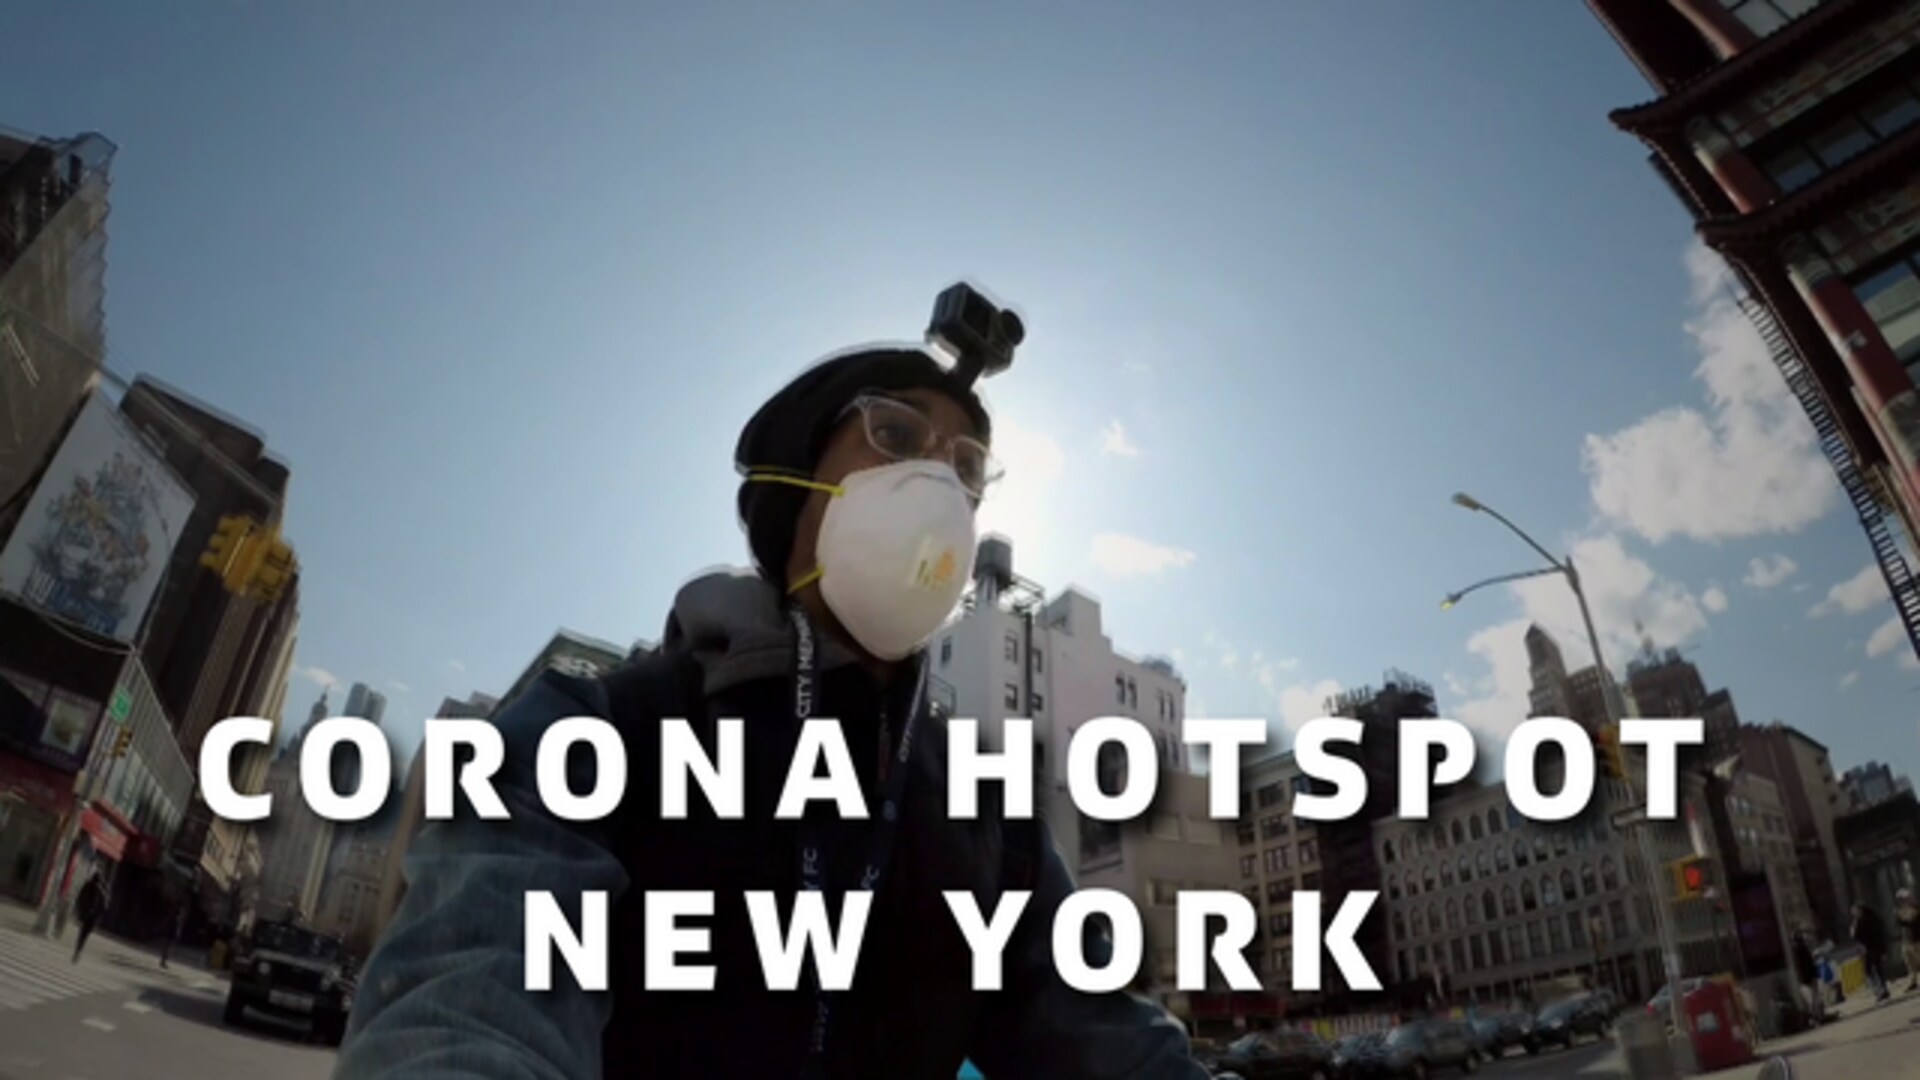 Corona Hotspot New York